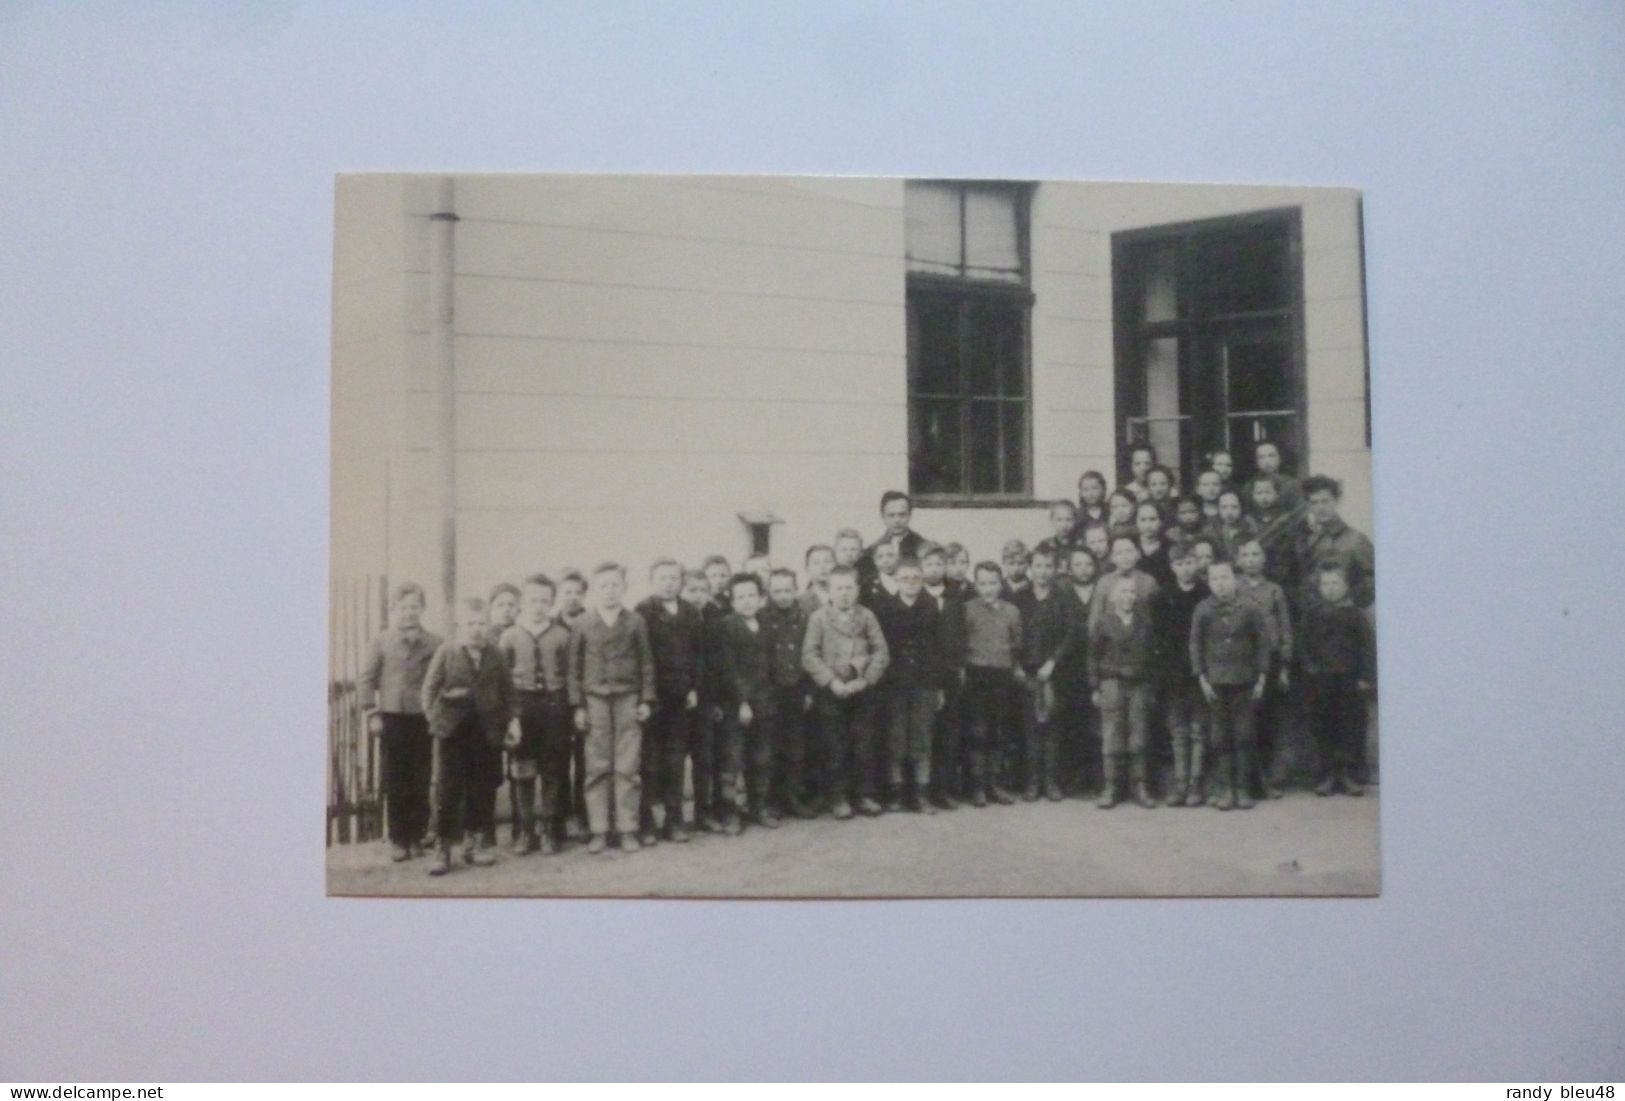 KIRCHBERG - WECHSEL  -  Ludwig WITTGENSTEIN  Mit Schülern In Otterthal  -  1925 -  AUSTRIA  -  AUTRICHE - Wechsel